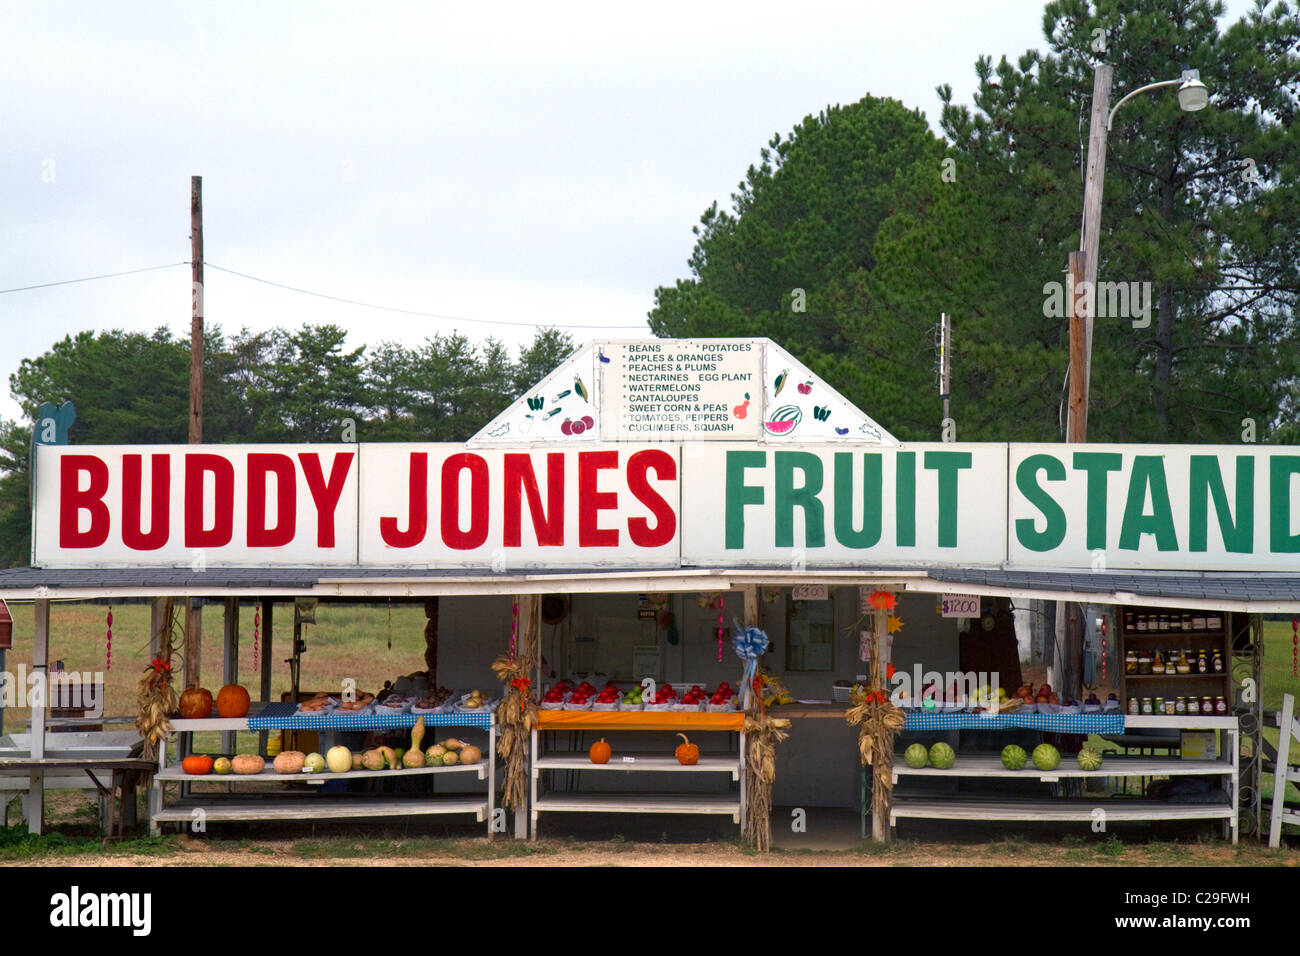 Buddy Jones Obststand entlang Highway 82 in zentrale Alabama, USA. Stockfoto